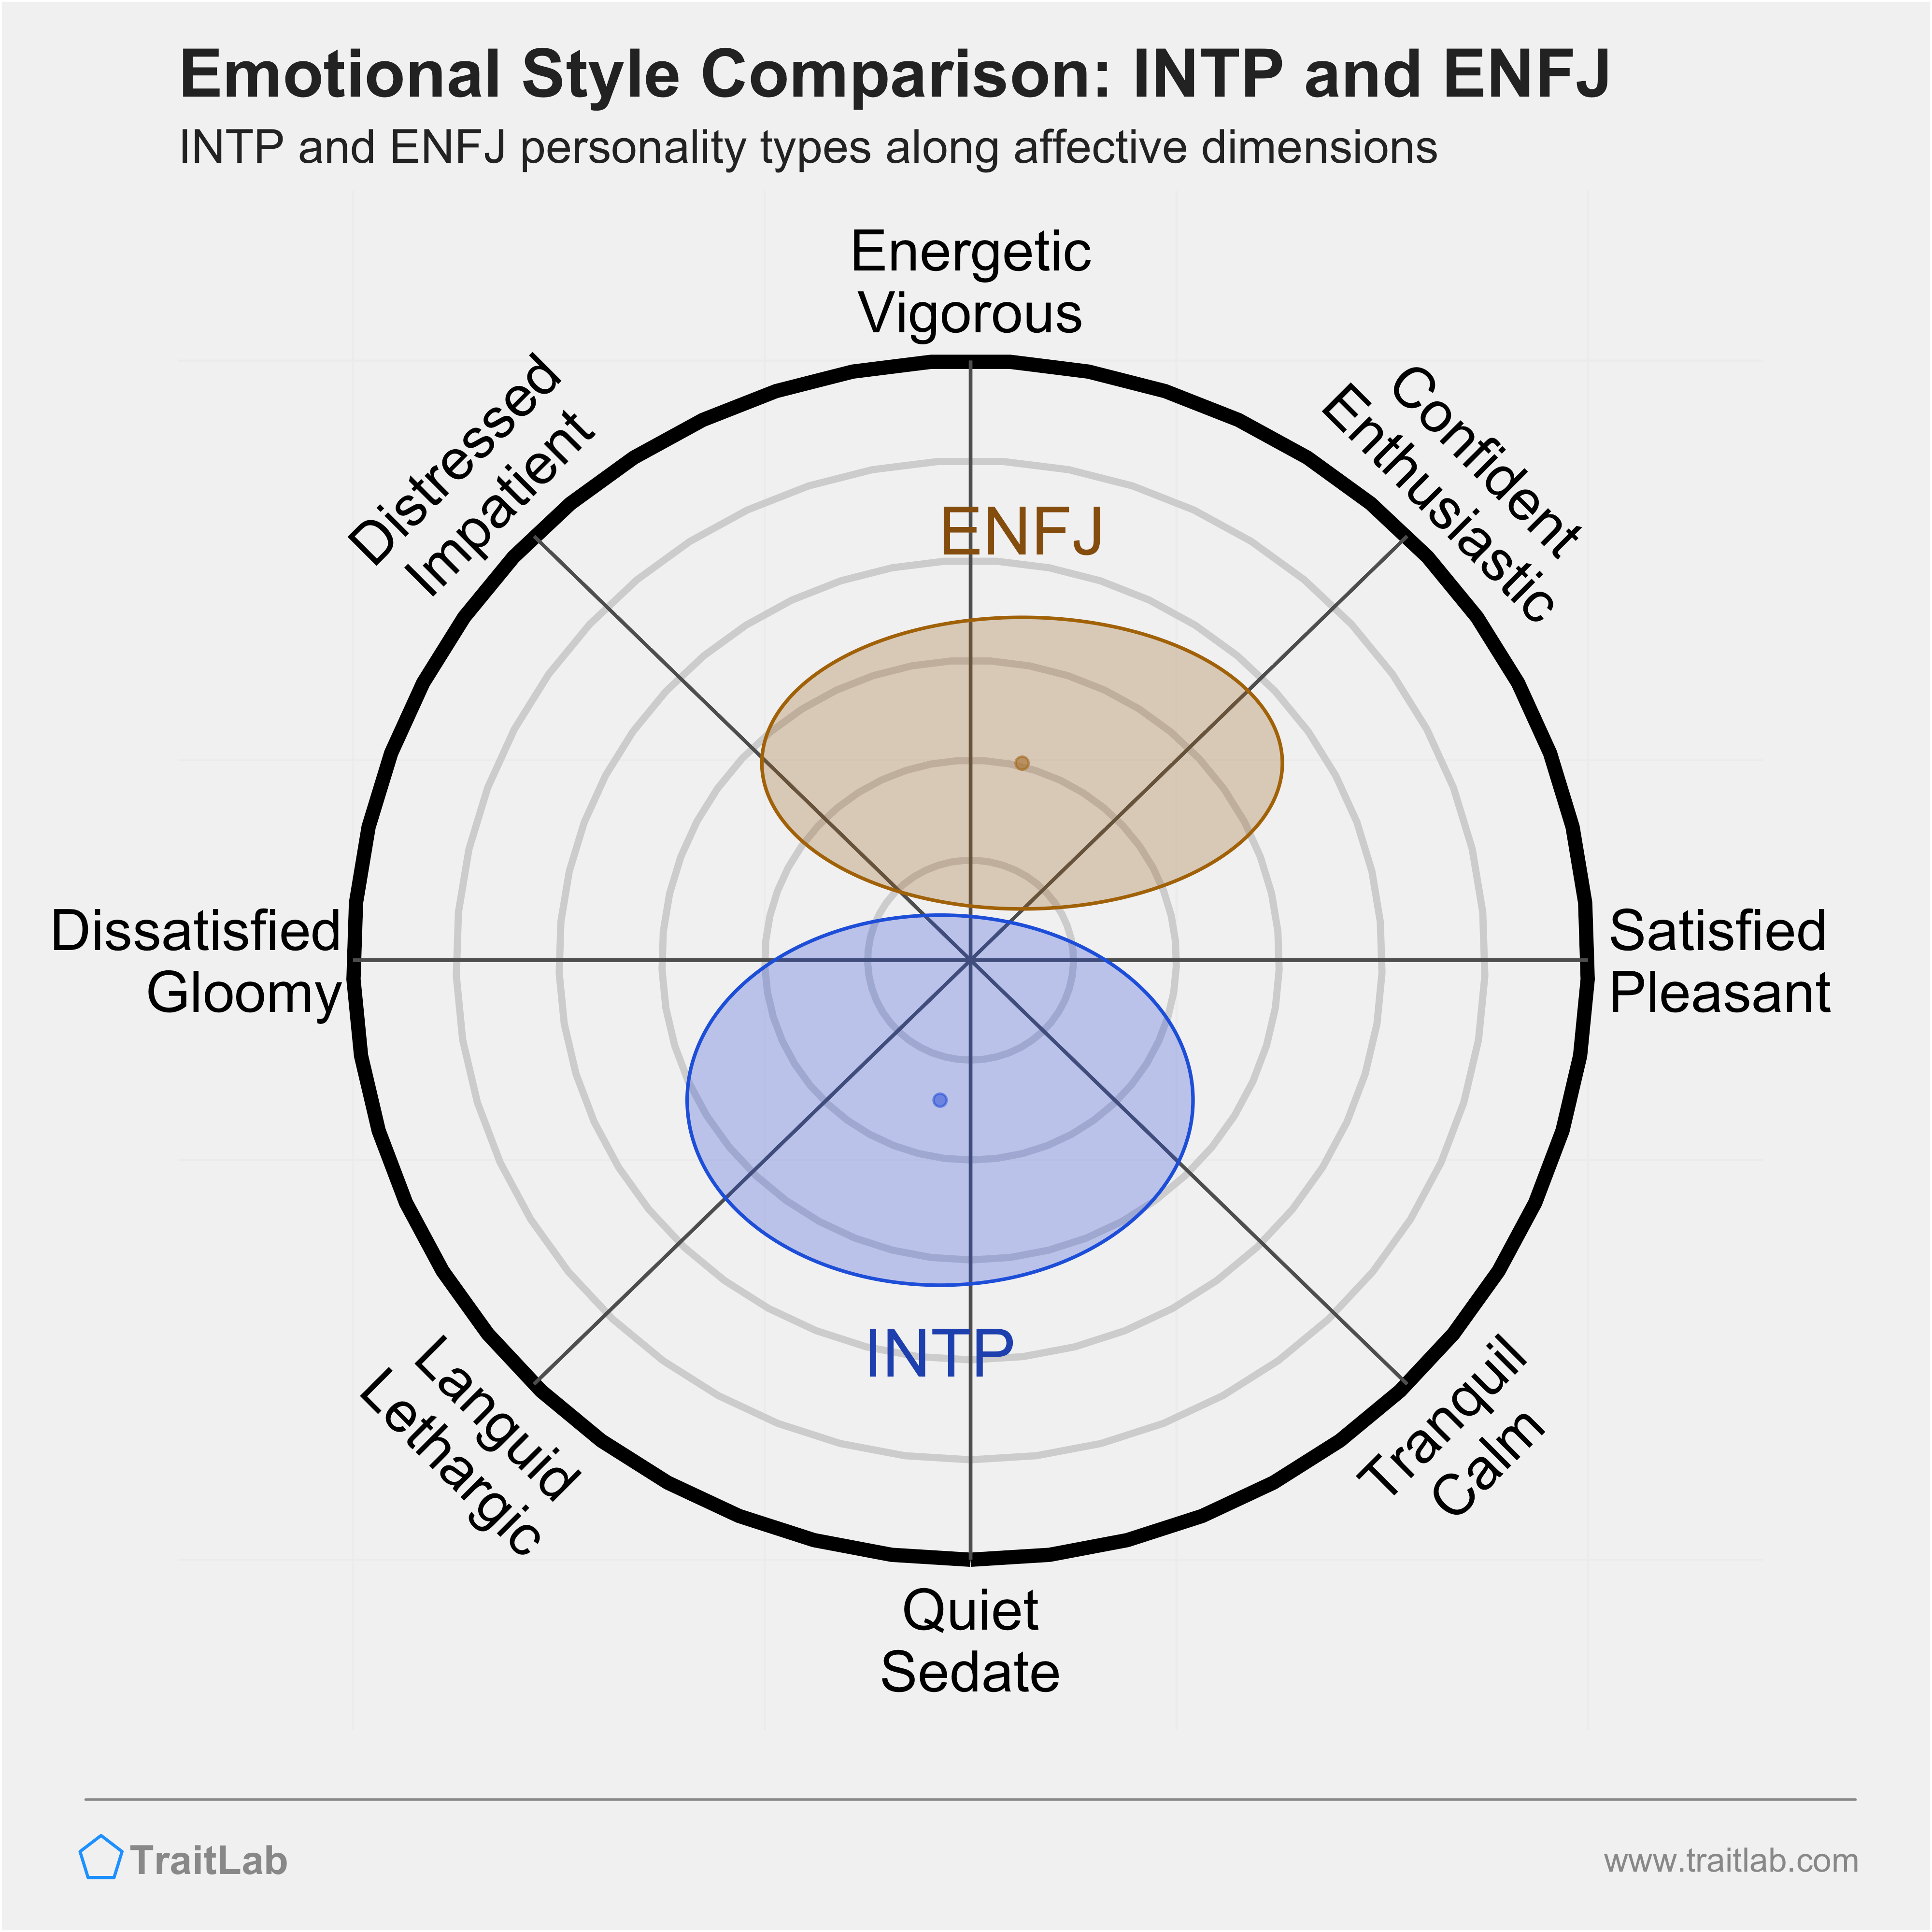 INTP and ENFJ comparison across emotional (affective) dimensions